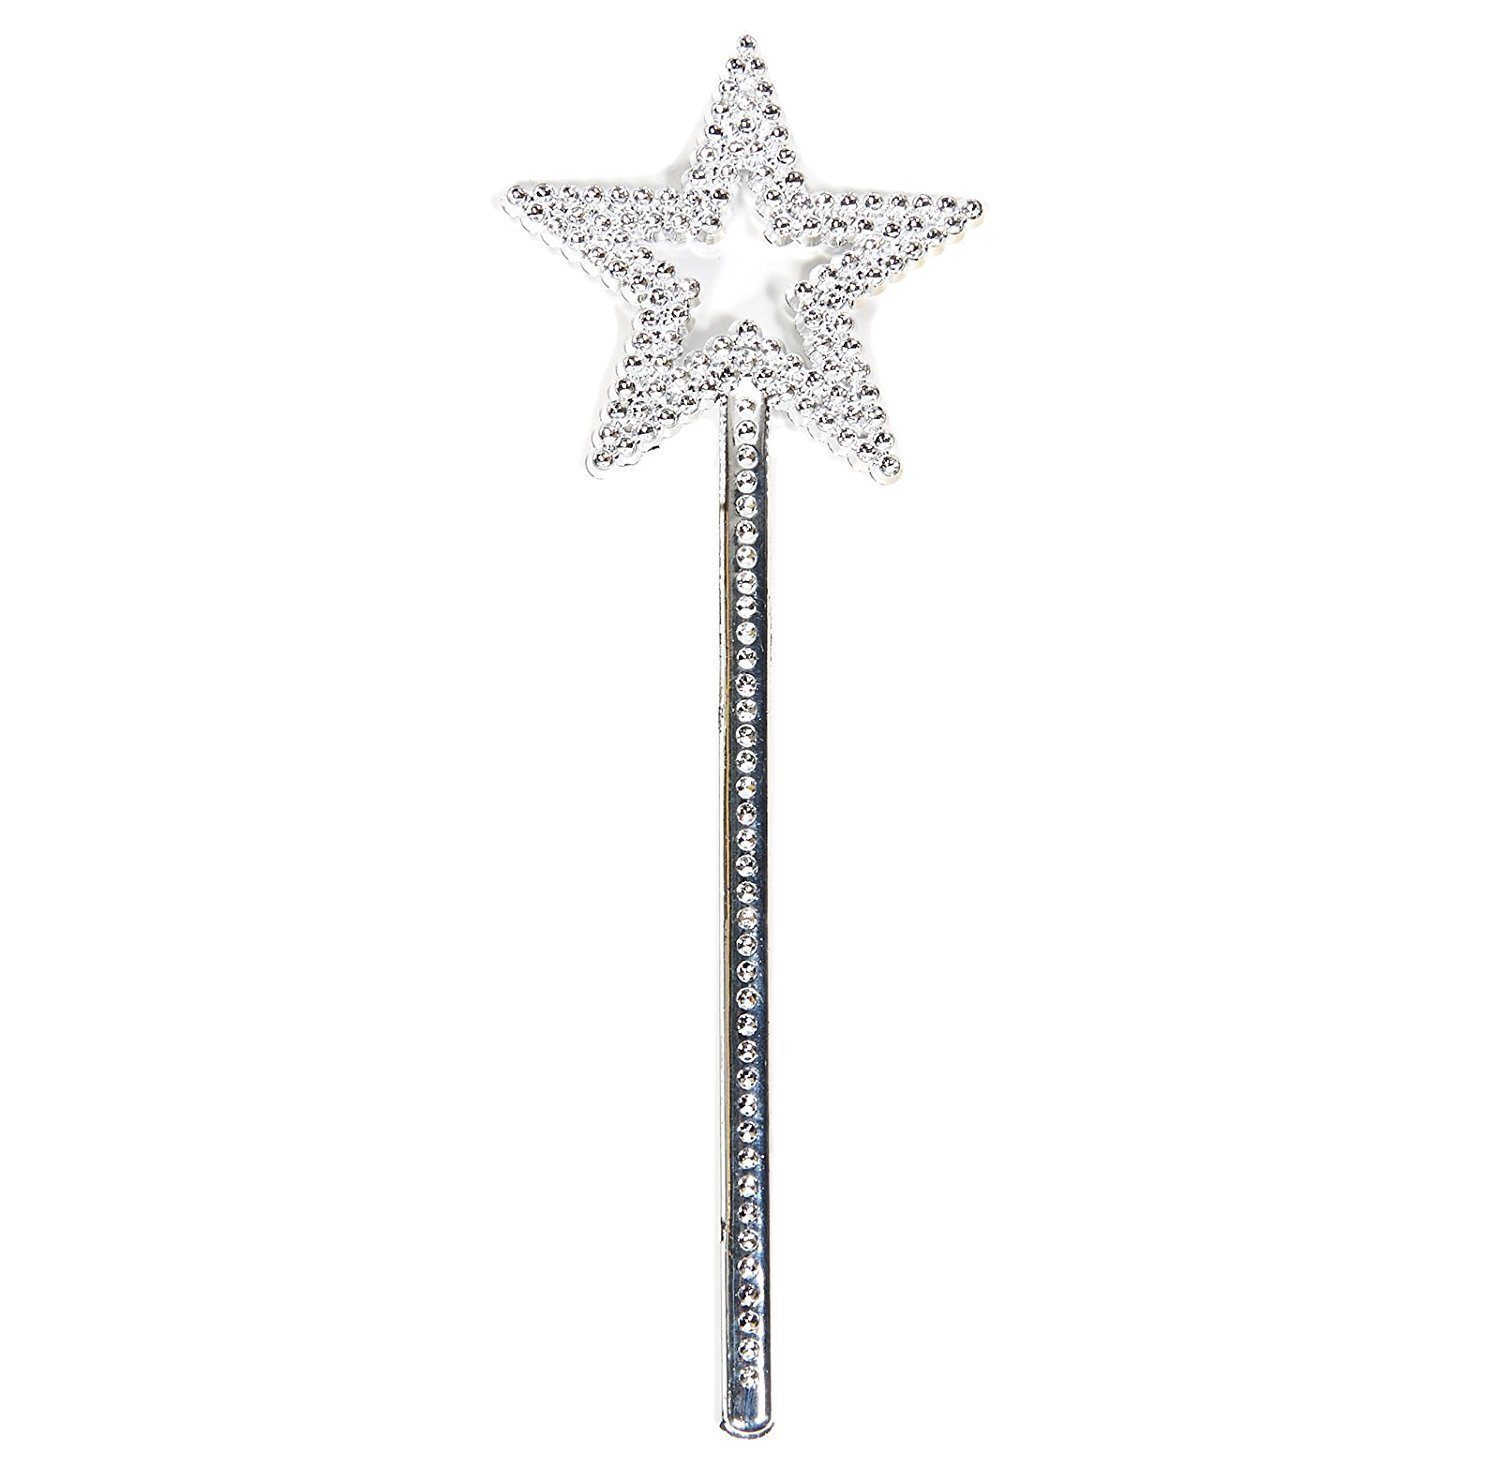 Yıldız Model Peri Asası Melek Asası Prenses Asası Metalize Gümüş Renk (4172)